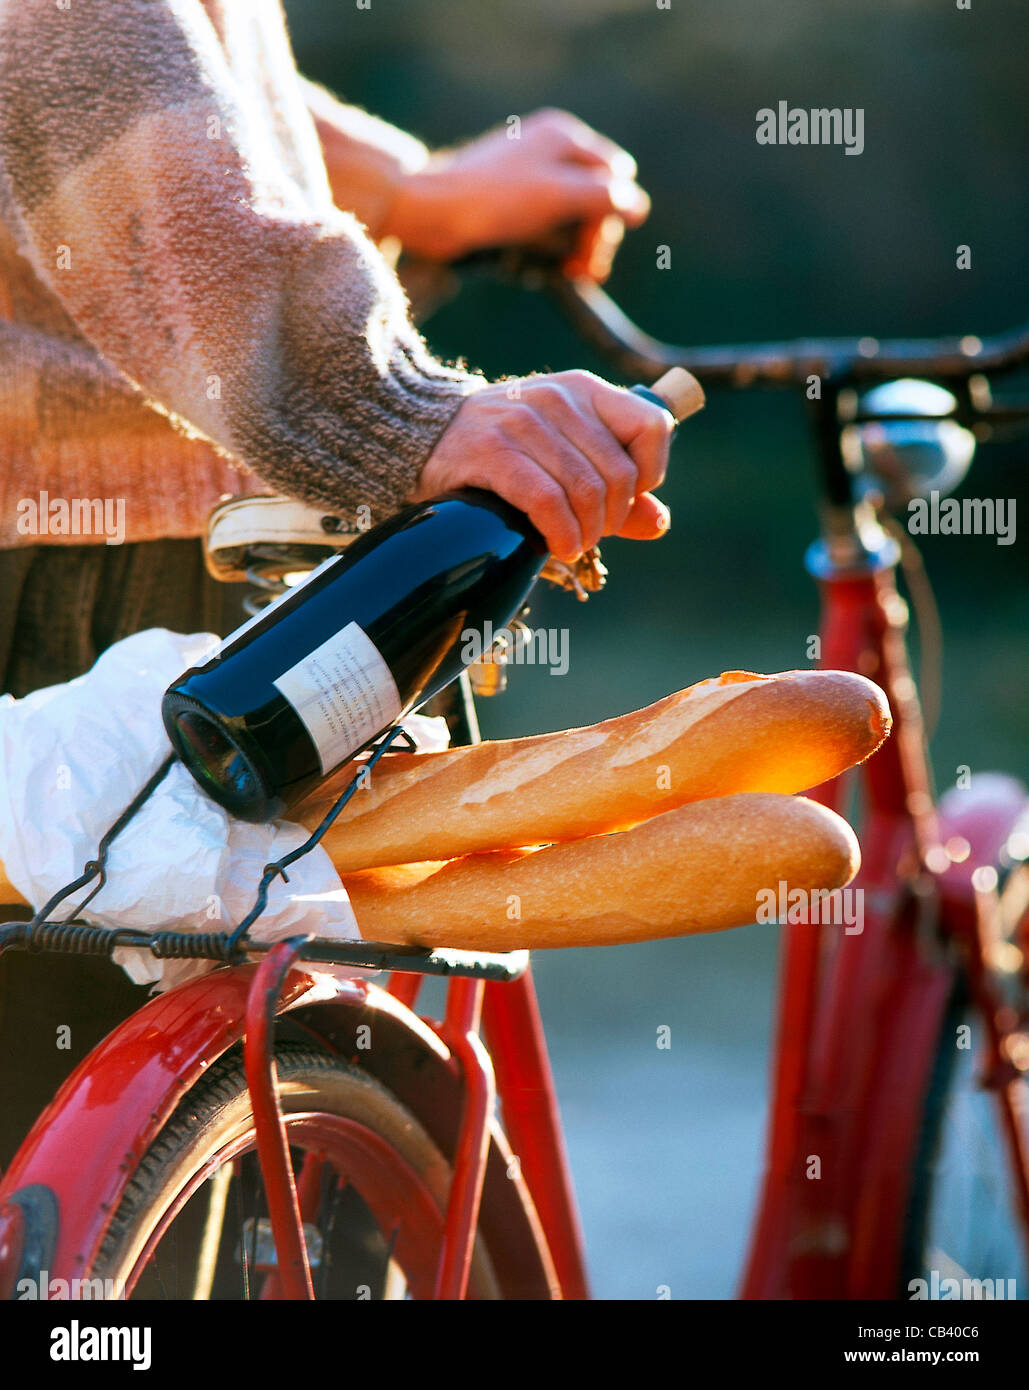 Todavía: el hombre con bicicleta, una botella de vino tinto en su mano, la baguette en la portadora Foto de stock